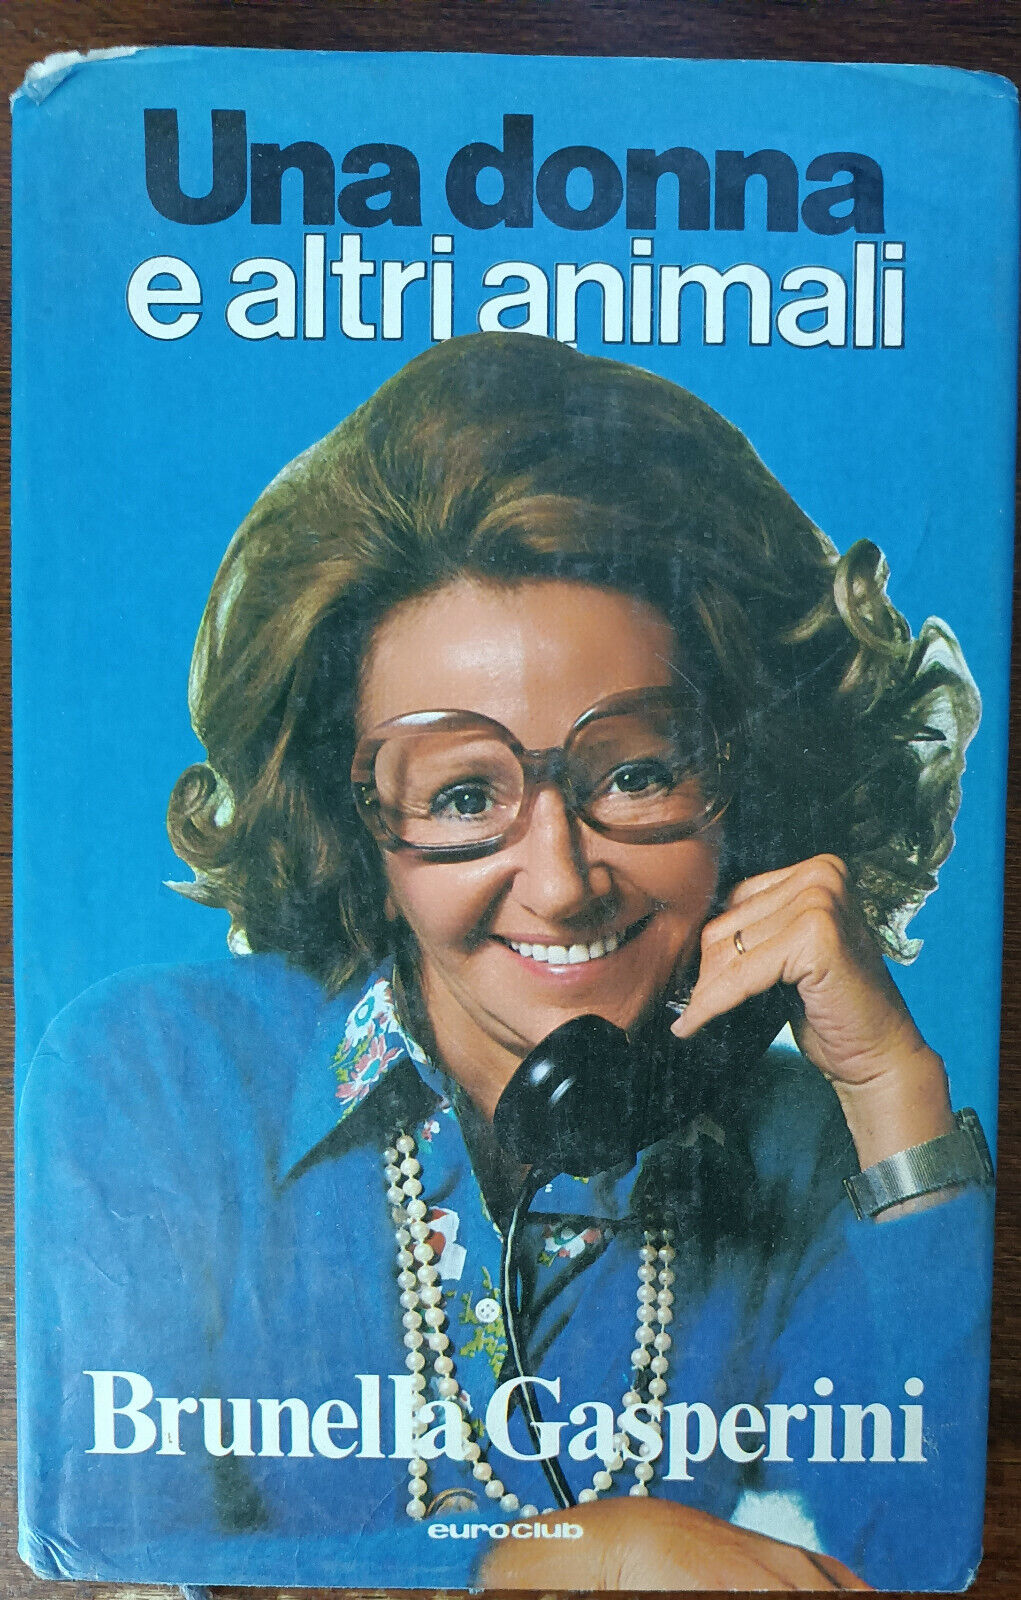 Una donna e altri animali  - Brunella Gasperini - Euroclub, 1979 - A